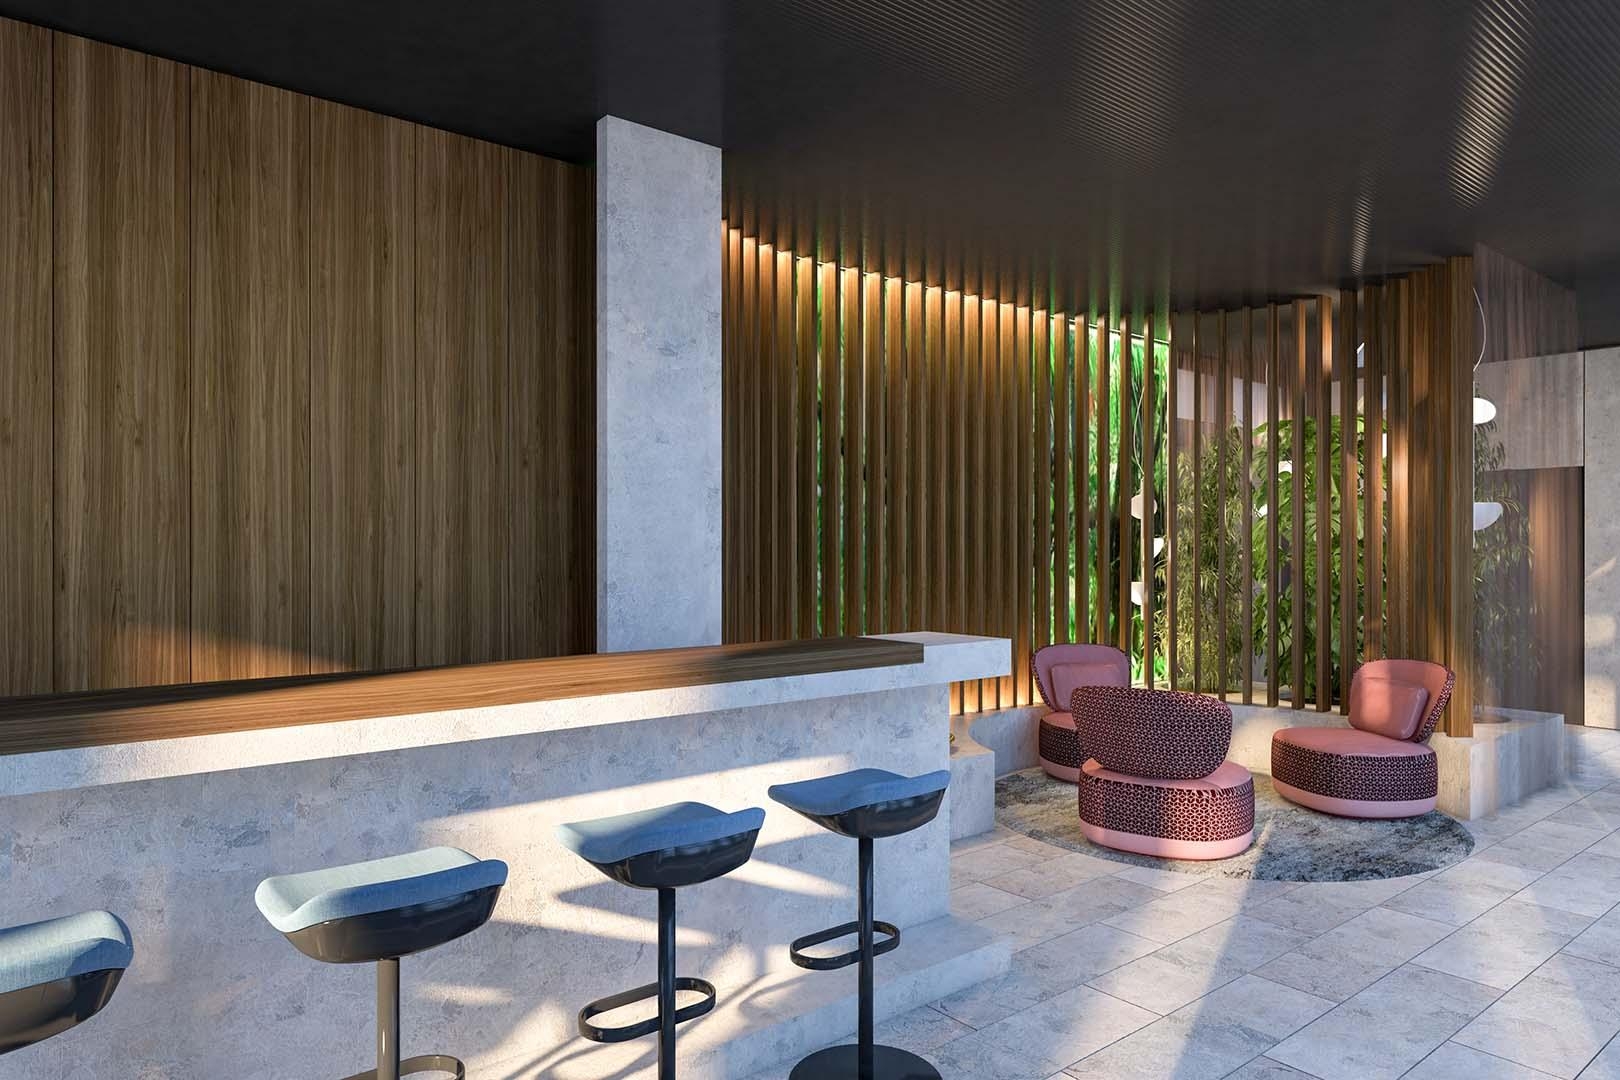 PwC Lounge
#destilat #interiordesign #innenarchitektur #agentur #wien #linz #interior #interiordesigntrends #lounge #loungechair #outdoordesign